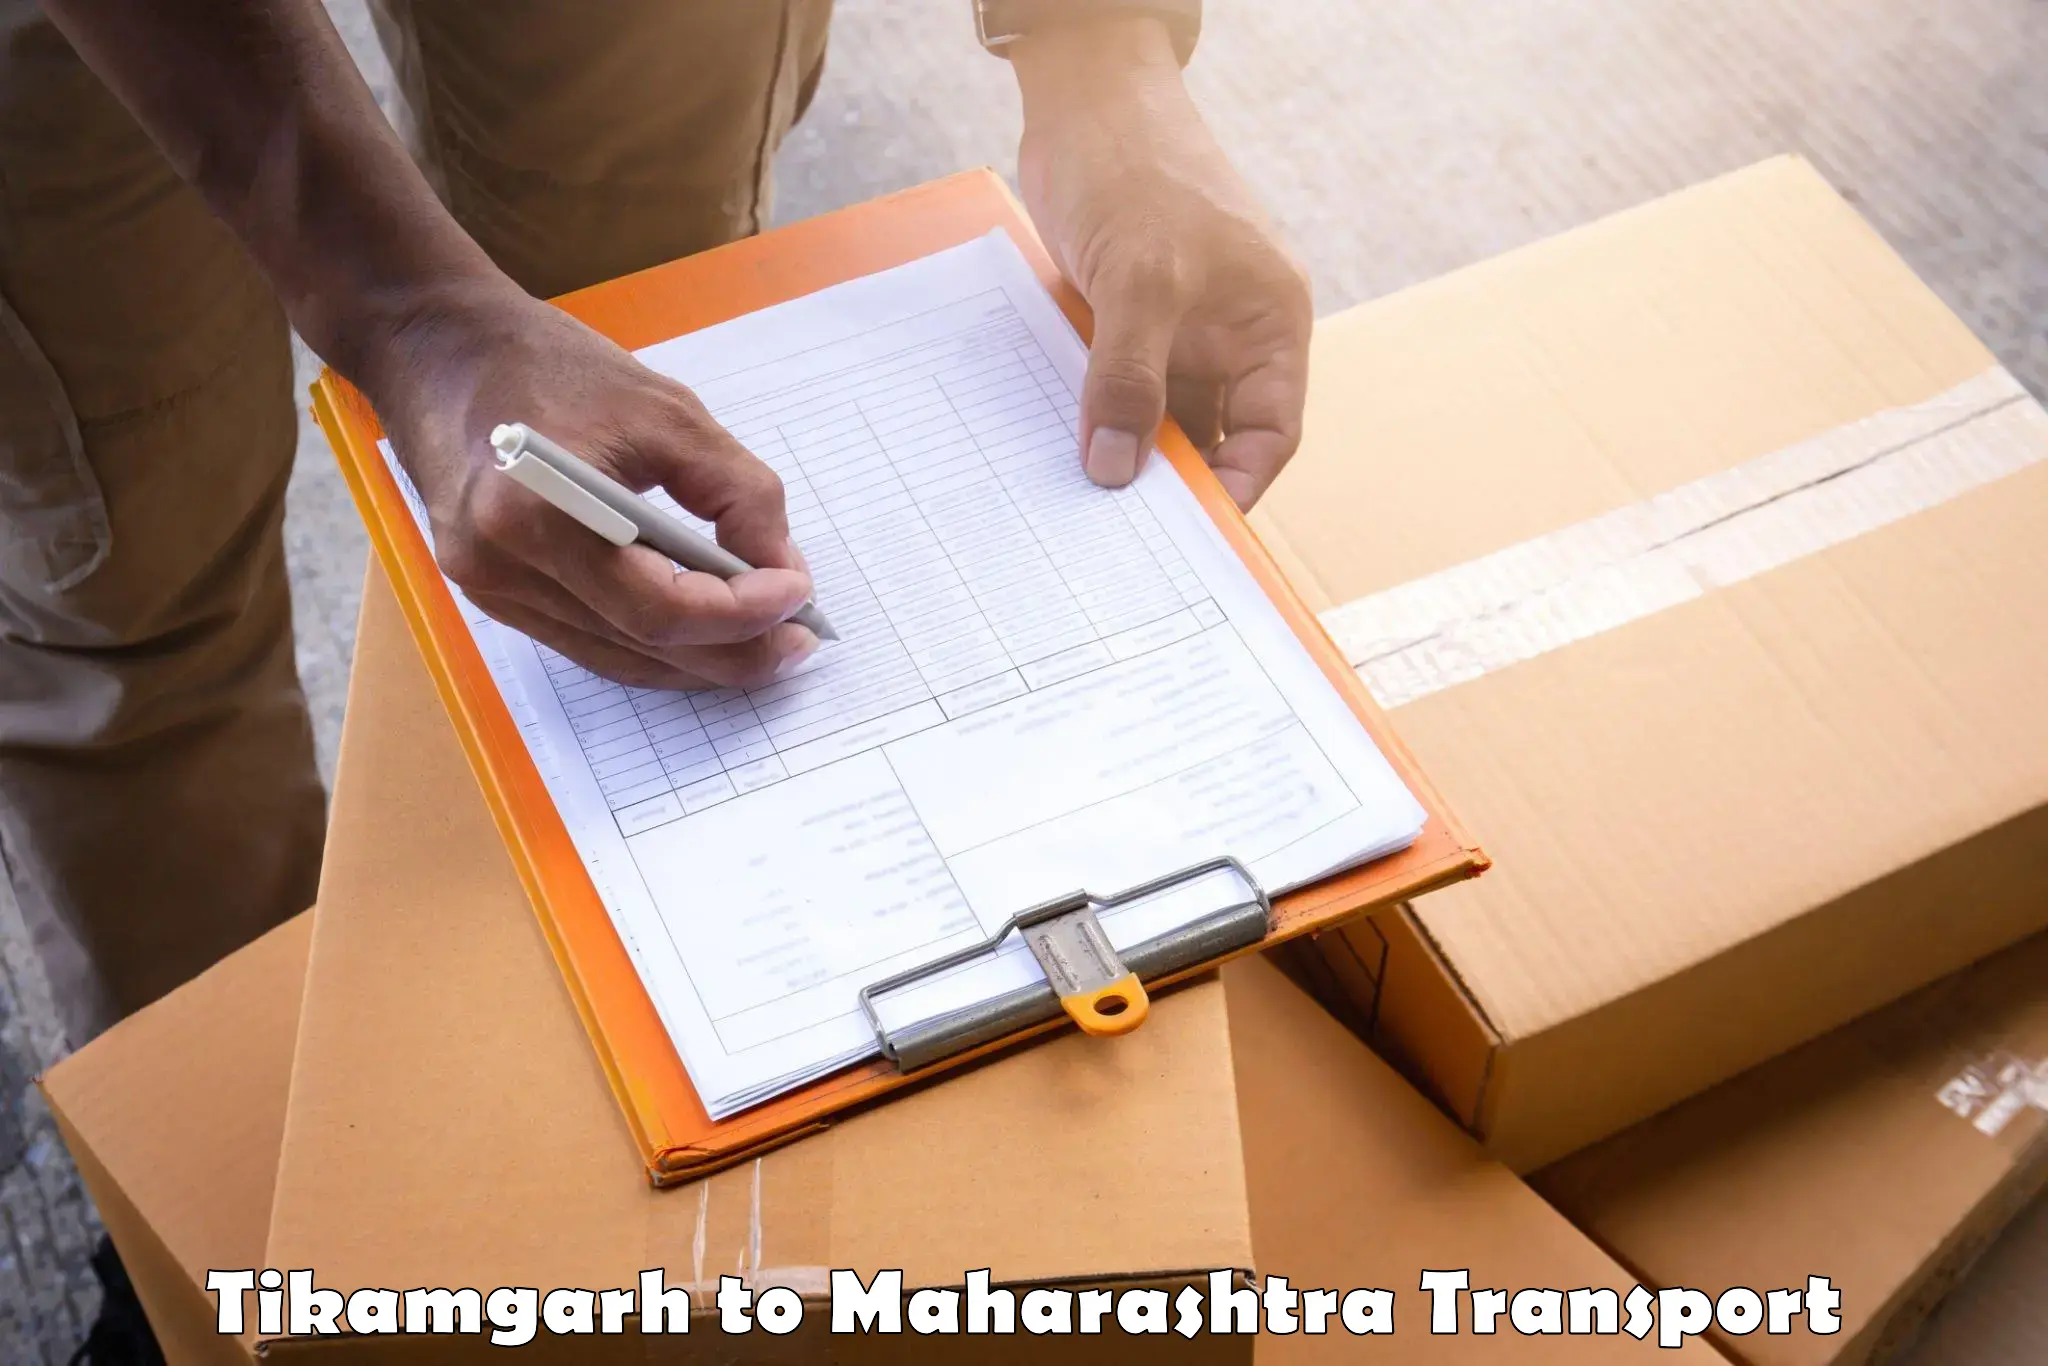 Bike shipping service Tikamgarh to Walchandnagar